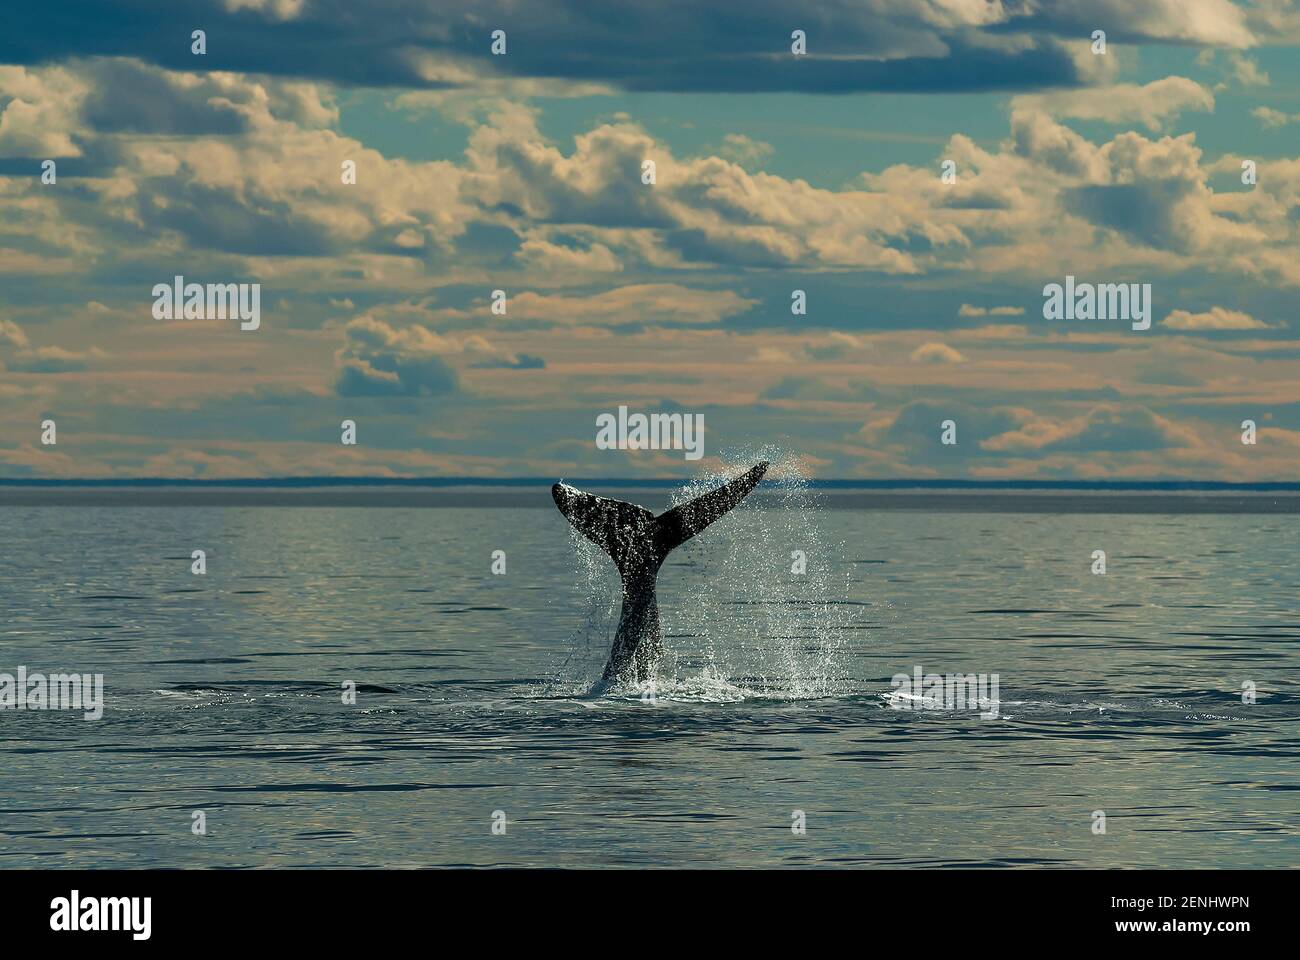 Balena di destra meridionale, Penisola Valdes, Patrimonio dell'Umanità dell'UNESCO, Patagonia, Argentina. Foto Stock